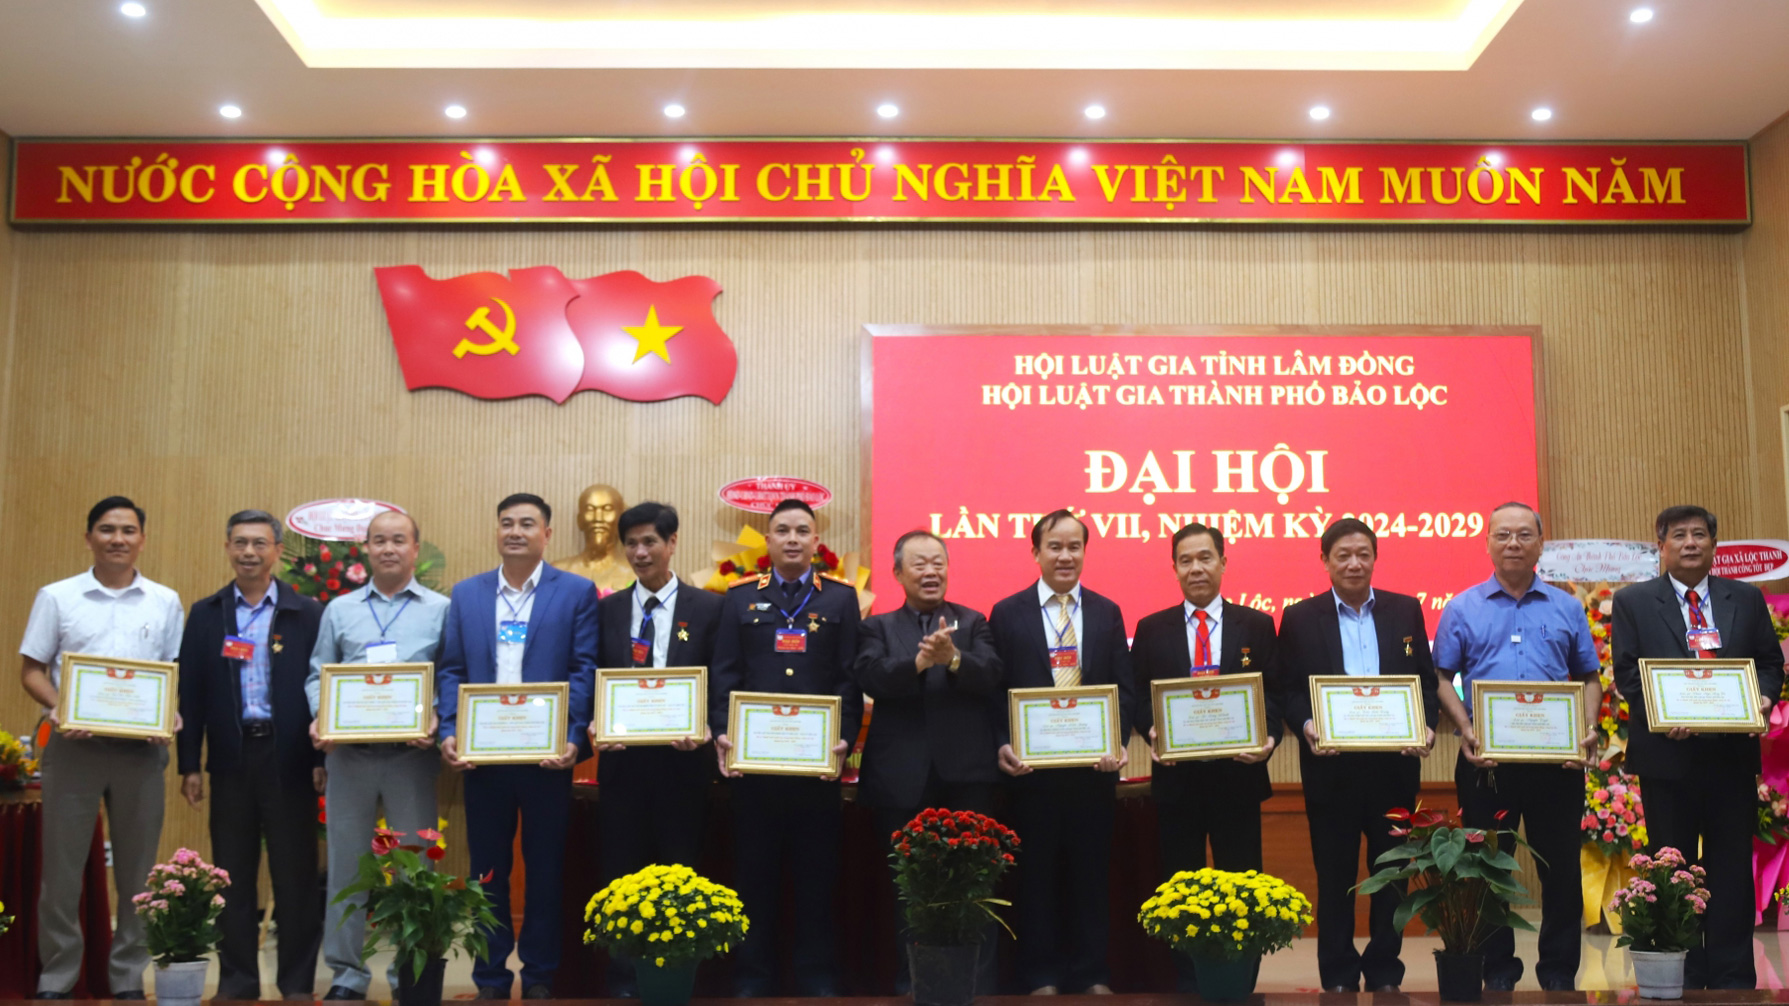 Các tập thể, cá nhân nhân khen thưởng của Hội Luật gia tỉnh Lâm Đồng